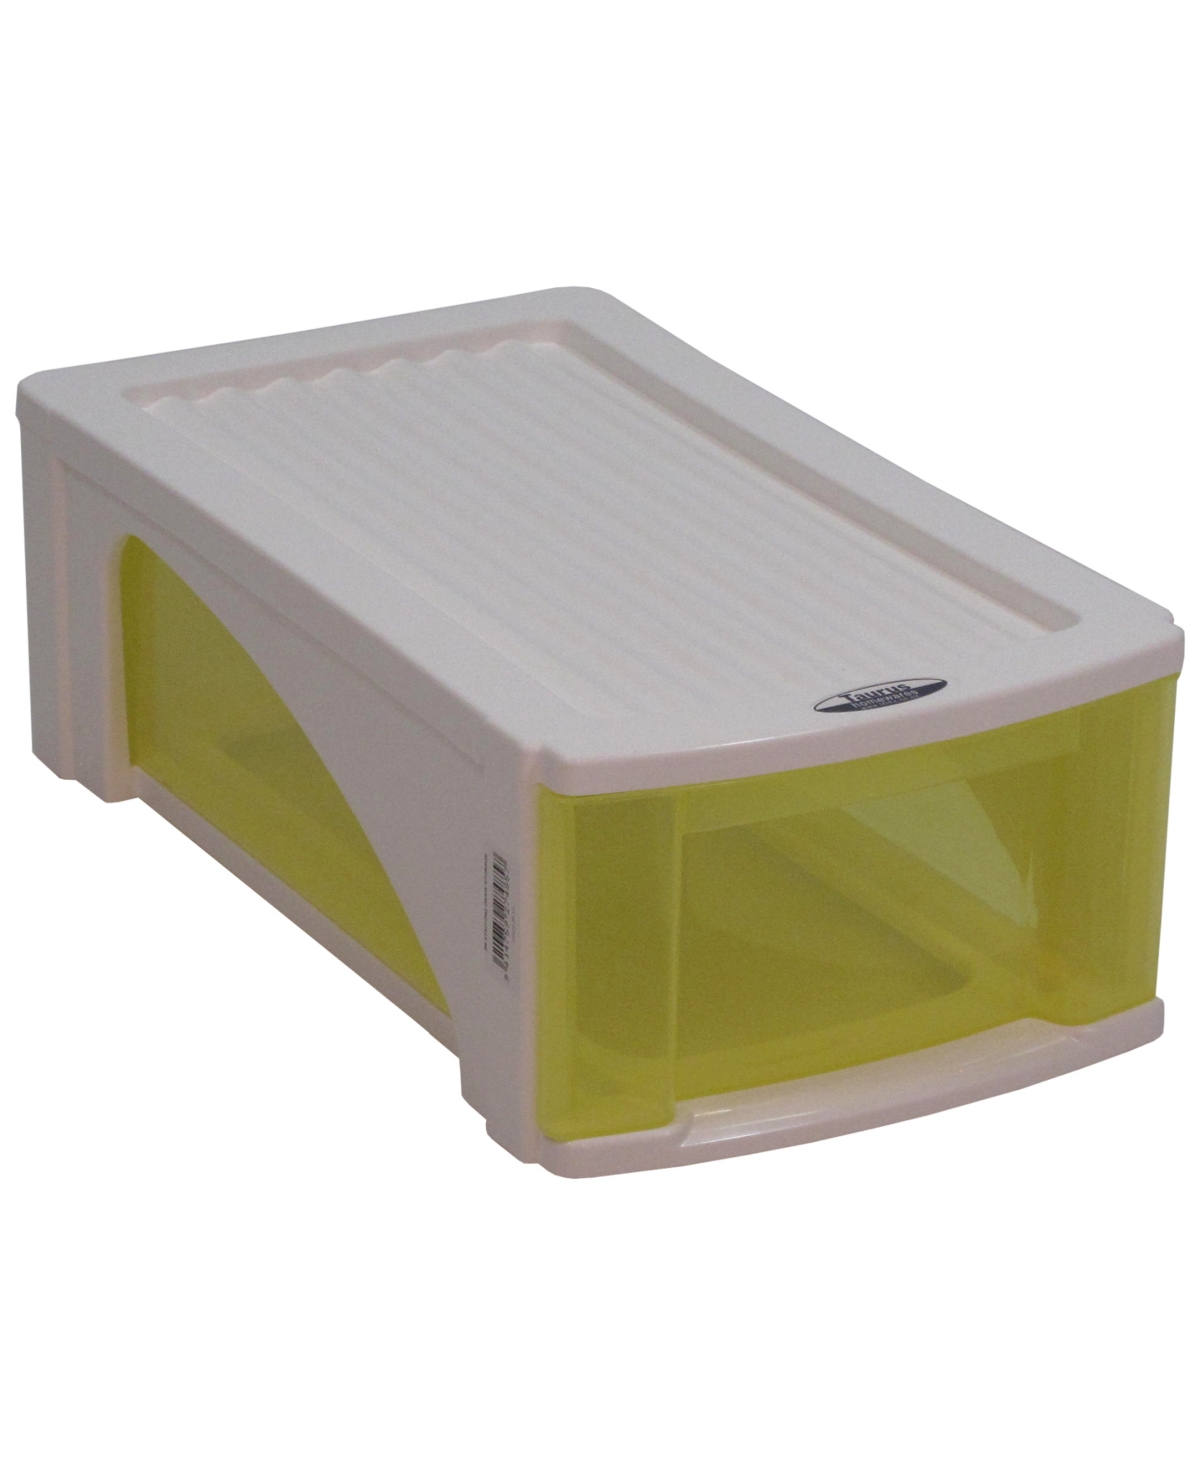 B5 Designer Single Stackable Drawer Storage - Yellow